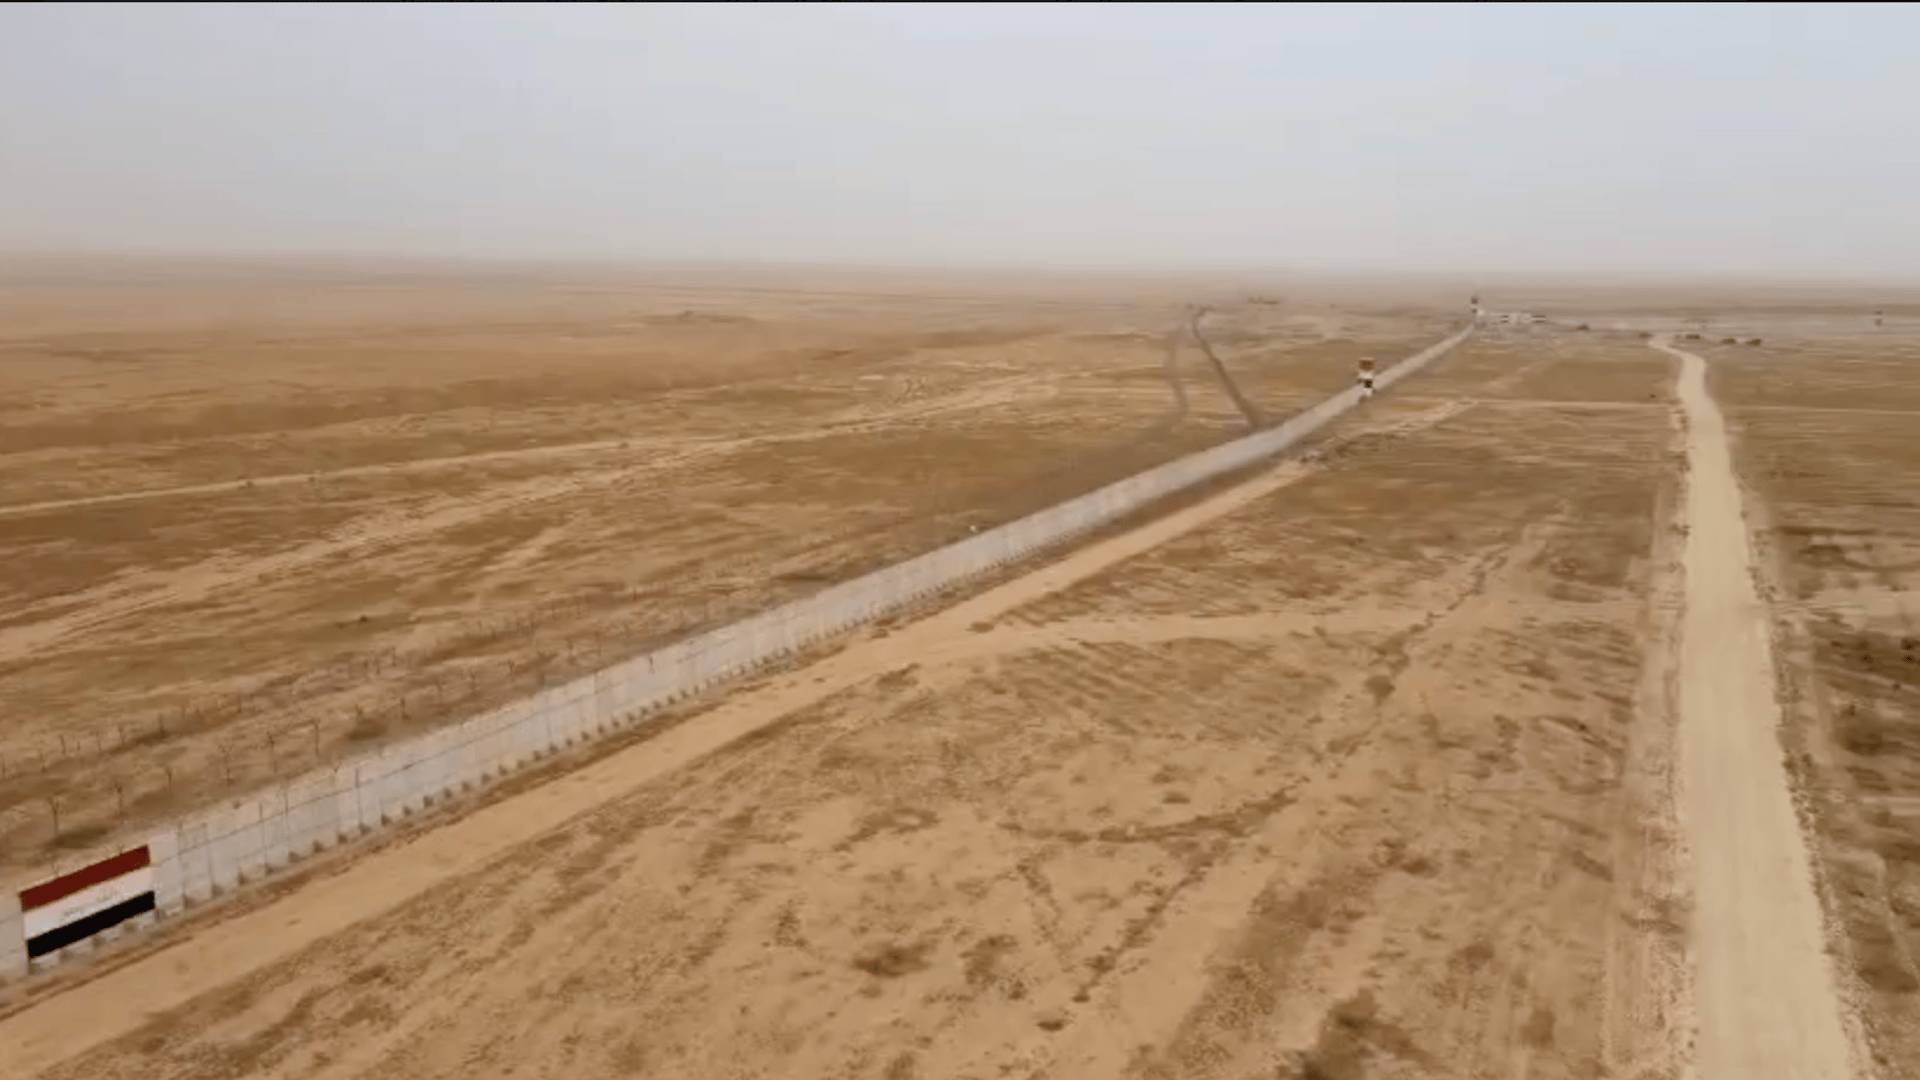 هل شاهدت الحدود العراقية - السورية من قبل؟.. فيديو من الجو لأكثر القواطع تحصيناً